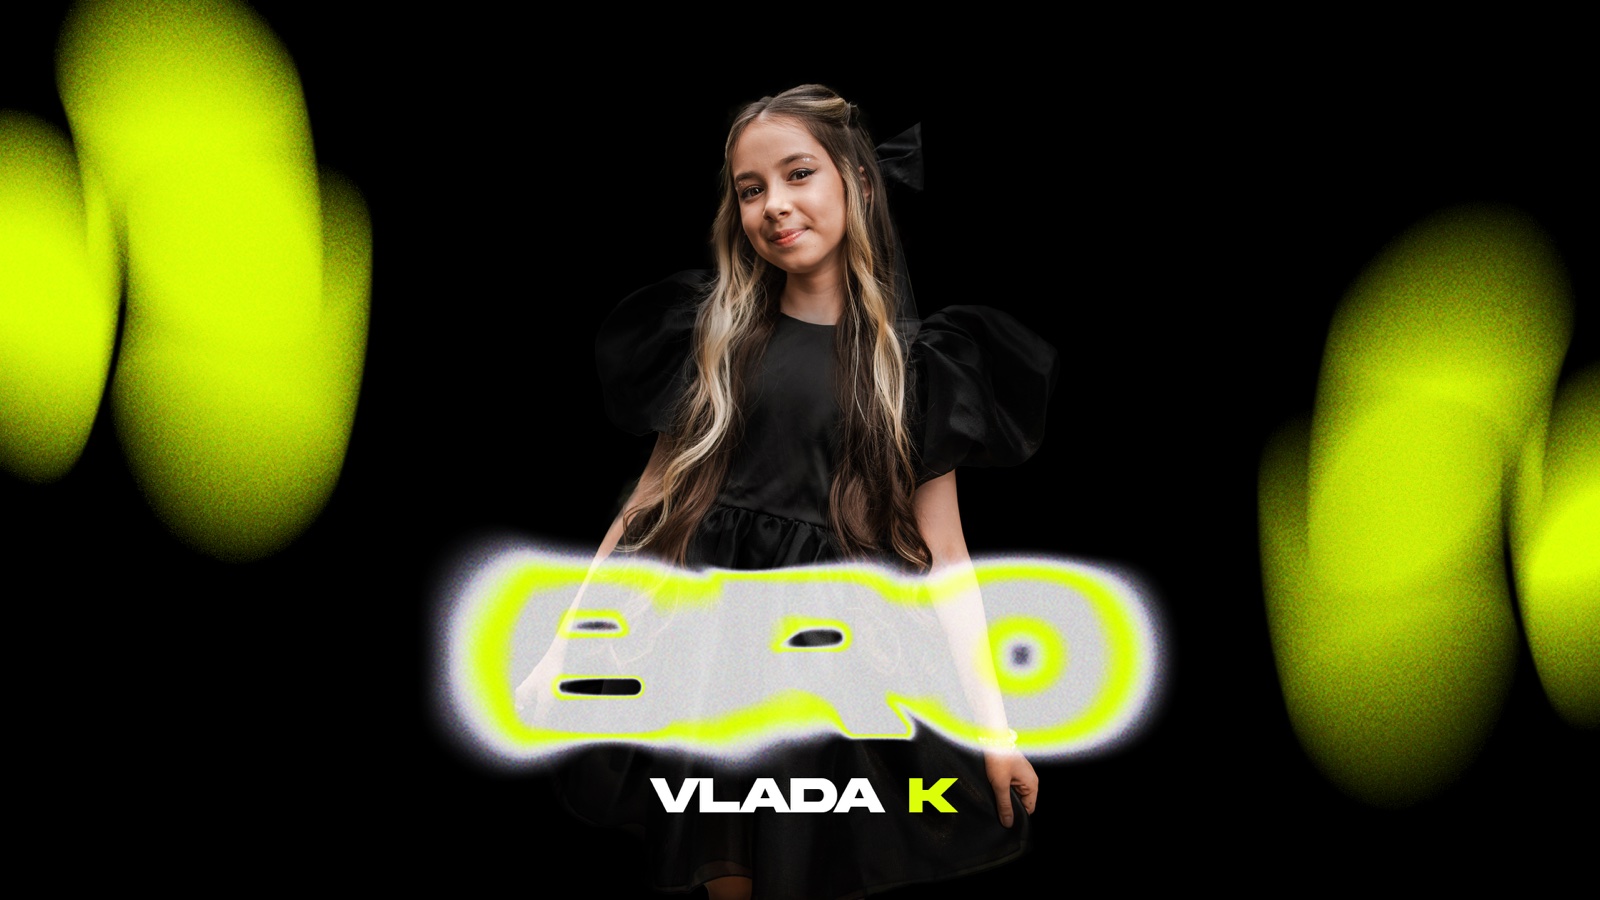 “BRO”: юна франківка Vlada K презентувала трек про втрачену дружбу (ВІДЕО)